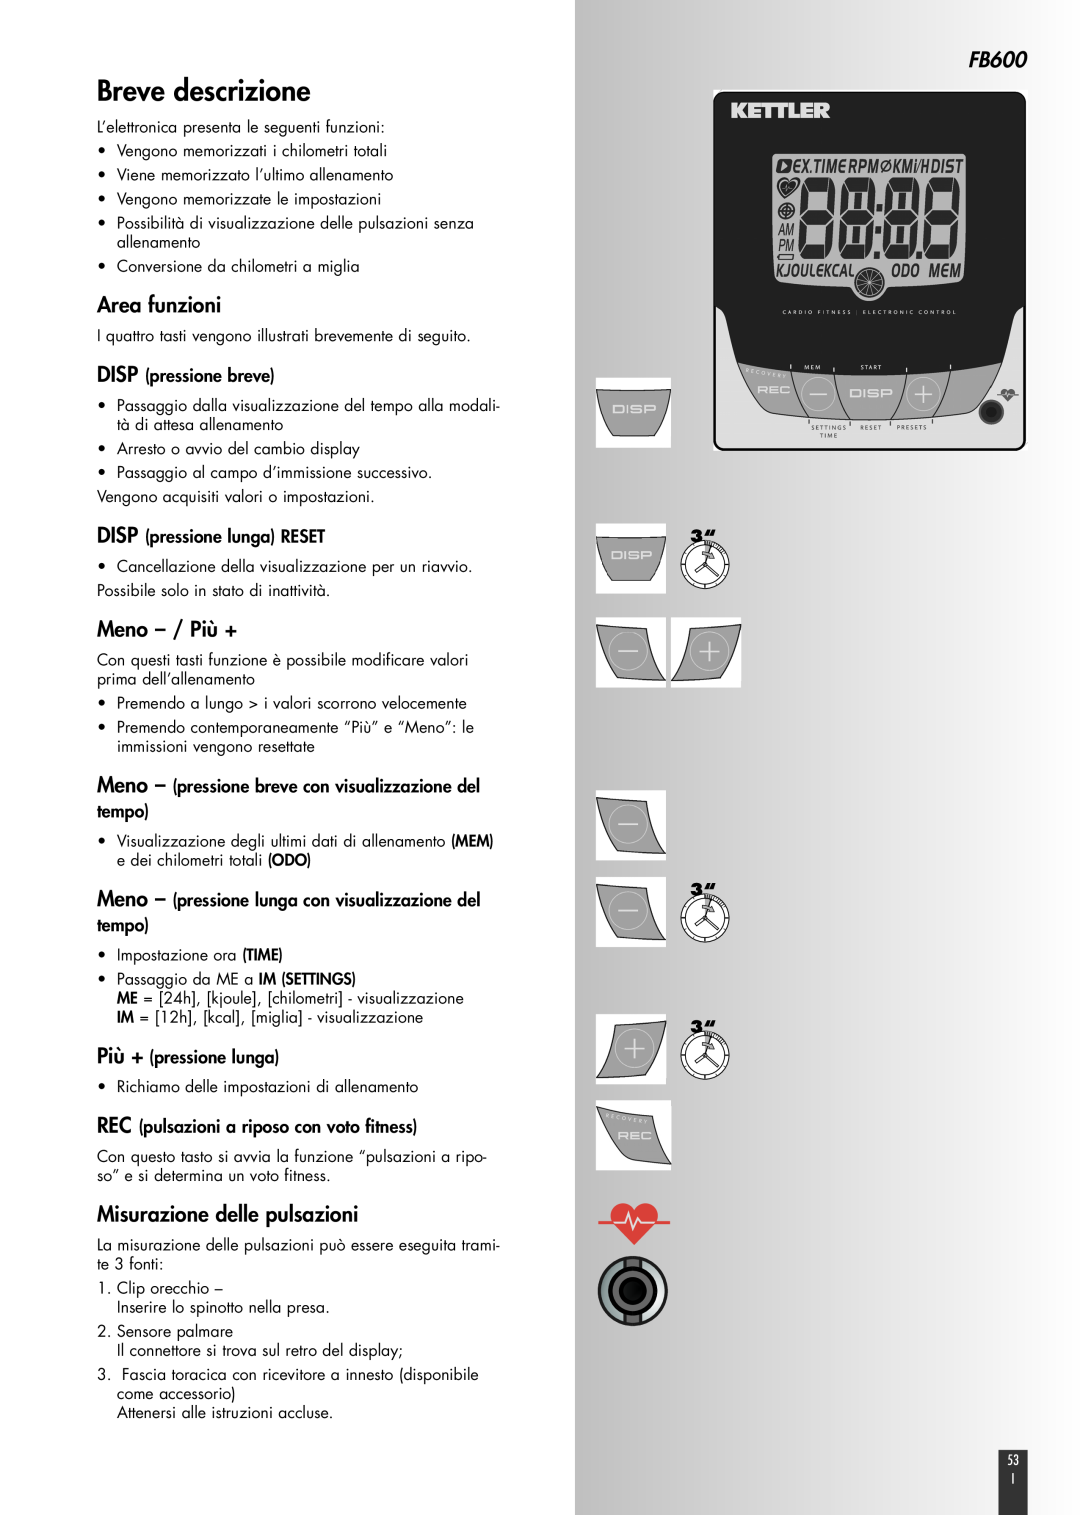 Kettler FB600 manual Breve descrizione, Area funzioni, Meno - / Più +, Misurazione delle pulsazioni, DISP pressione breve 